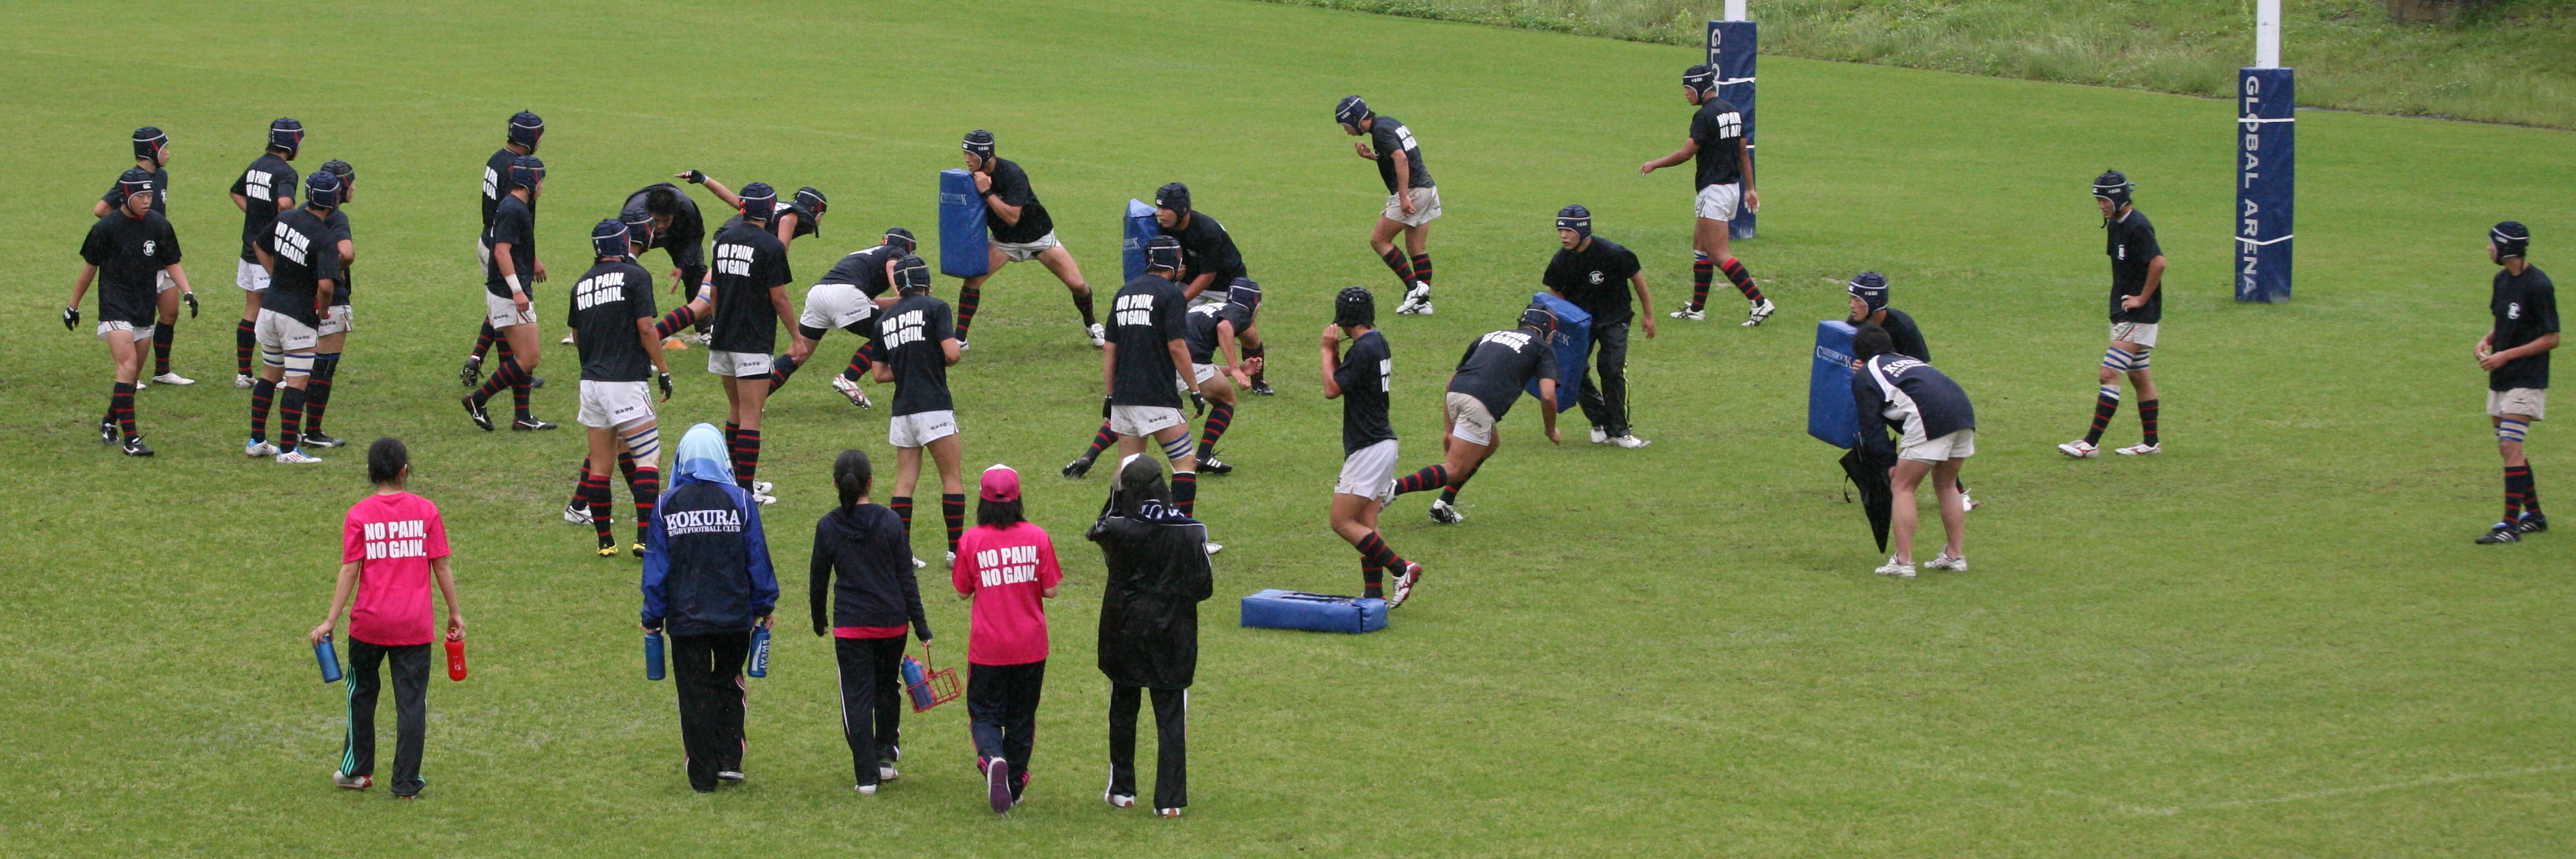 http://kokura-rugby.sakura.ne.jp/2011.5.29-1A.JPG